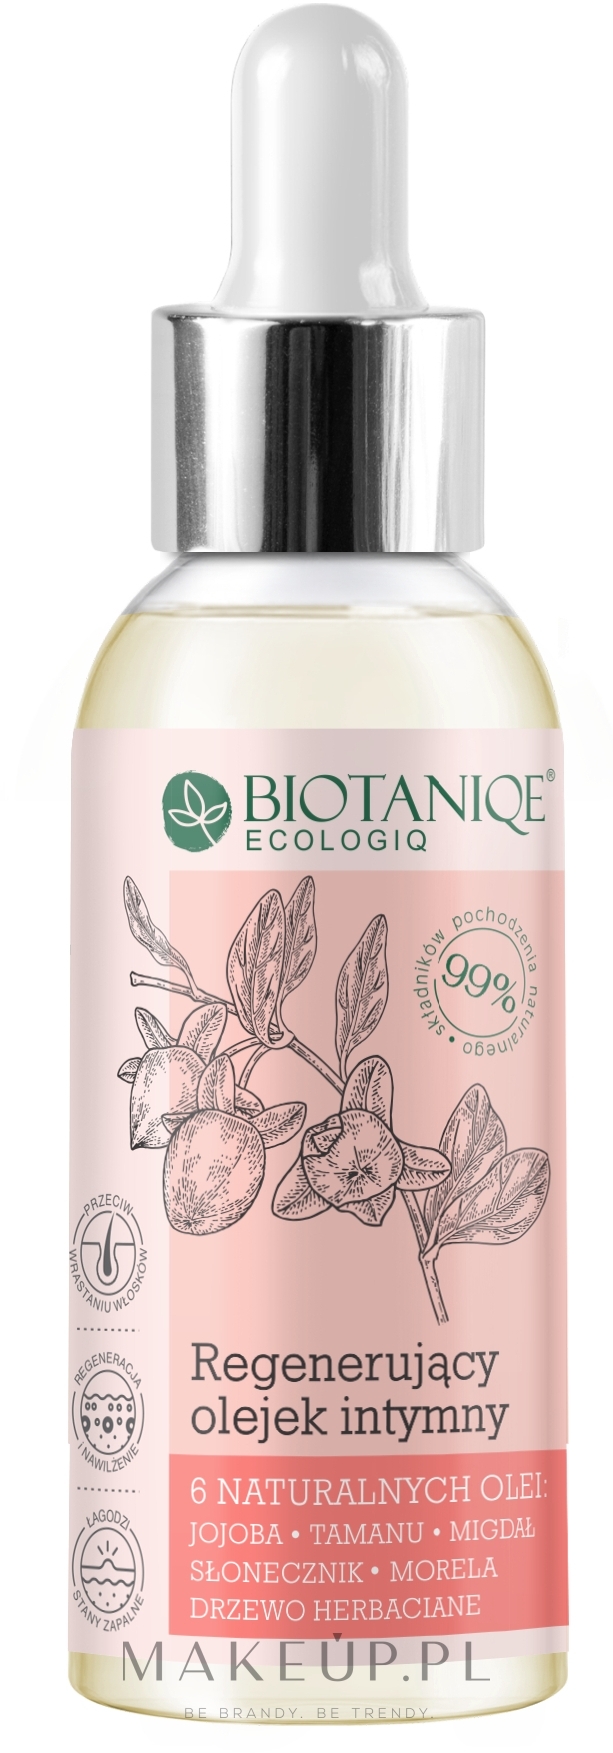 Regenerujący olejek intymny - Biotaniqe Ecologiq — Zdjęcie 90 ml